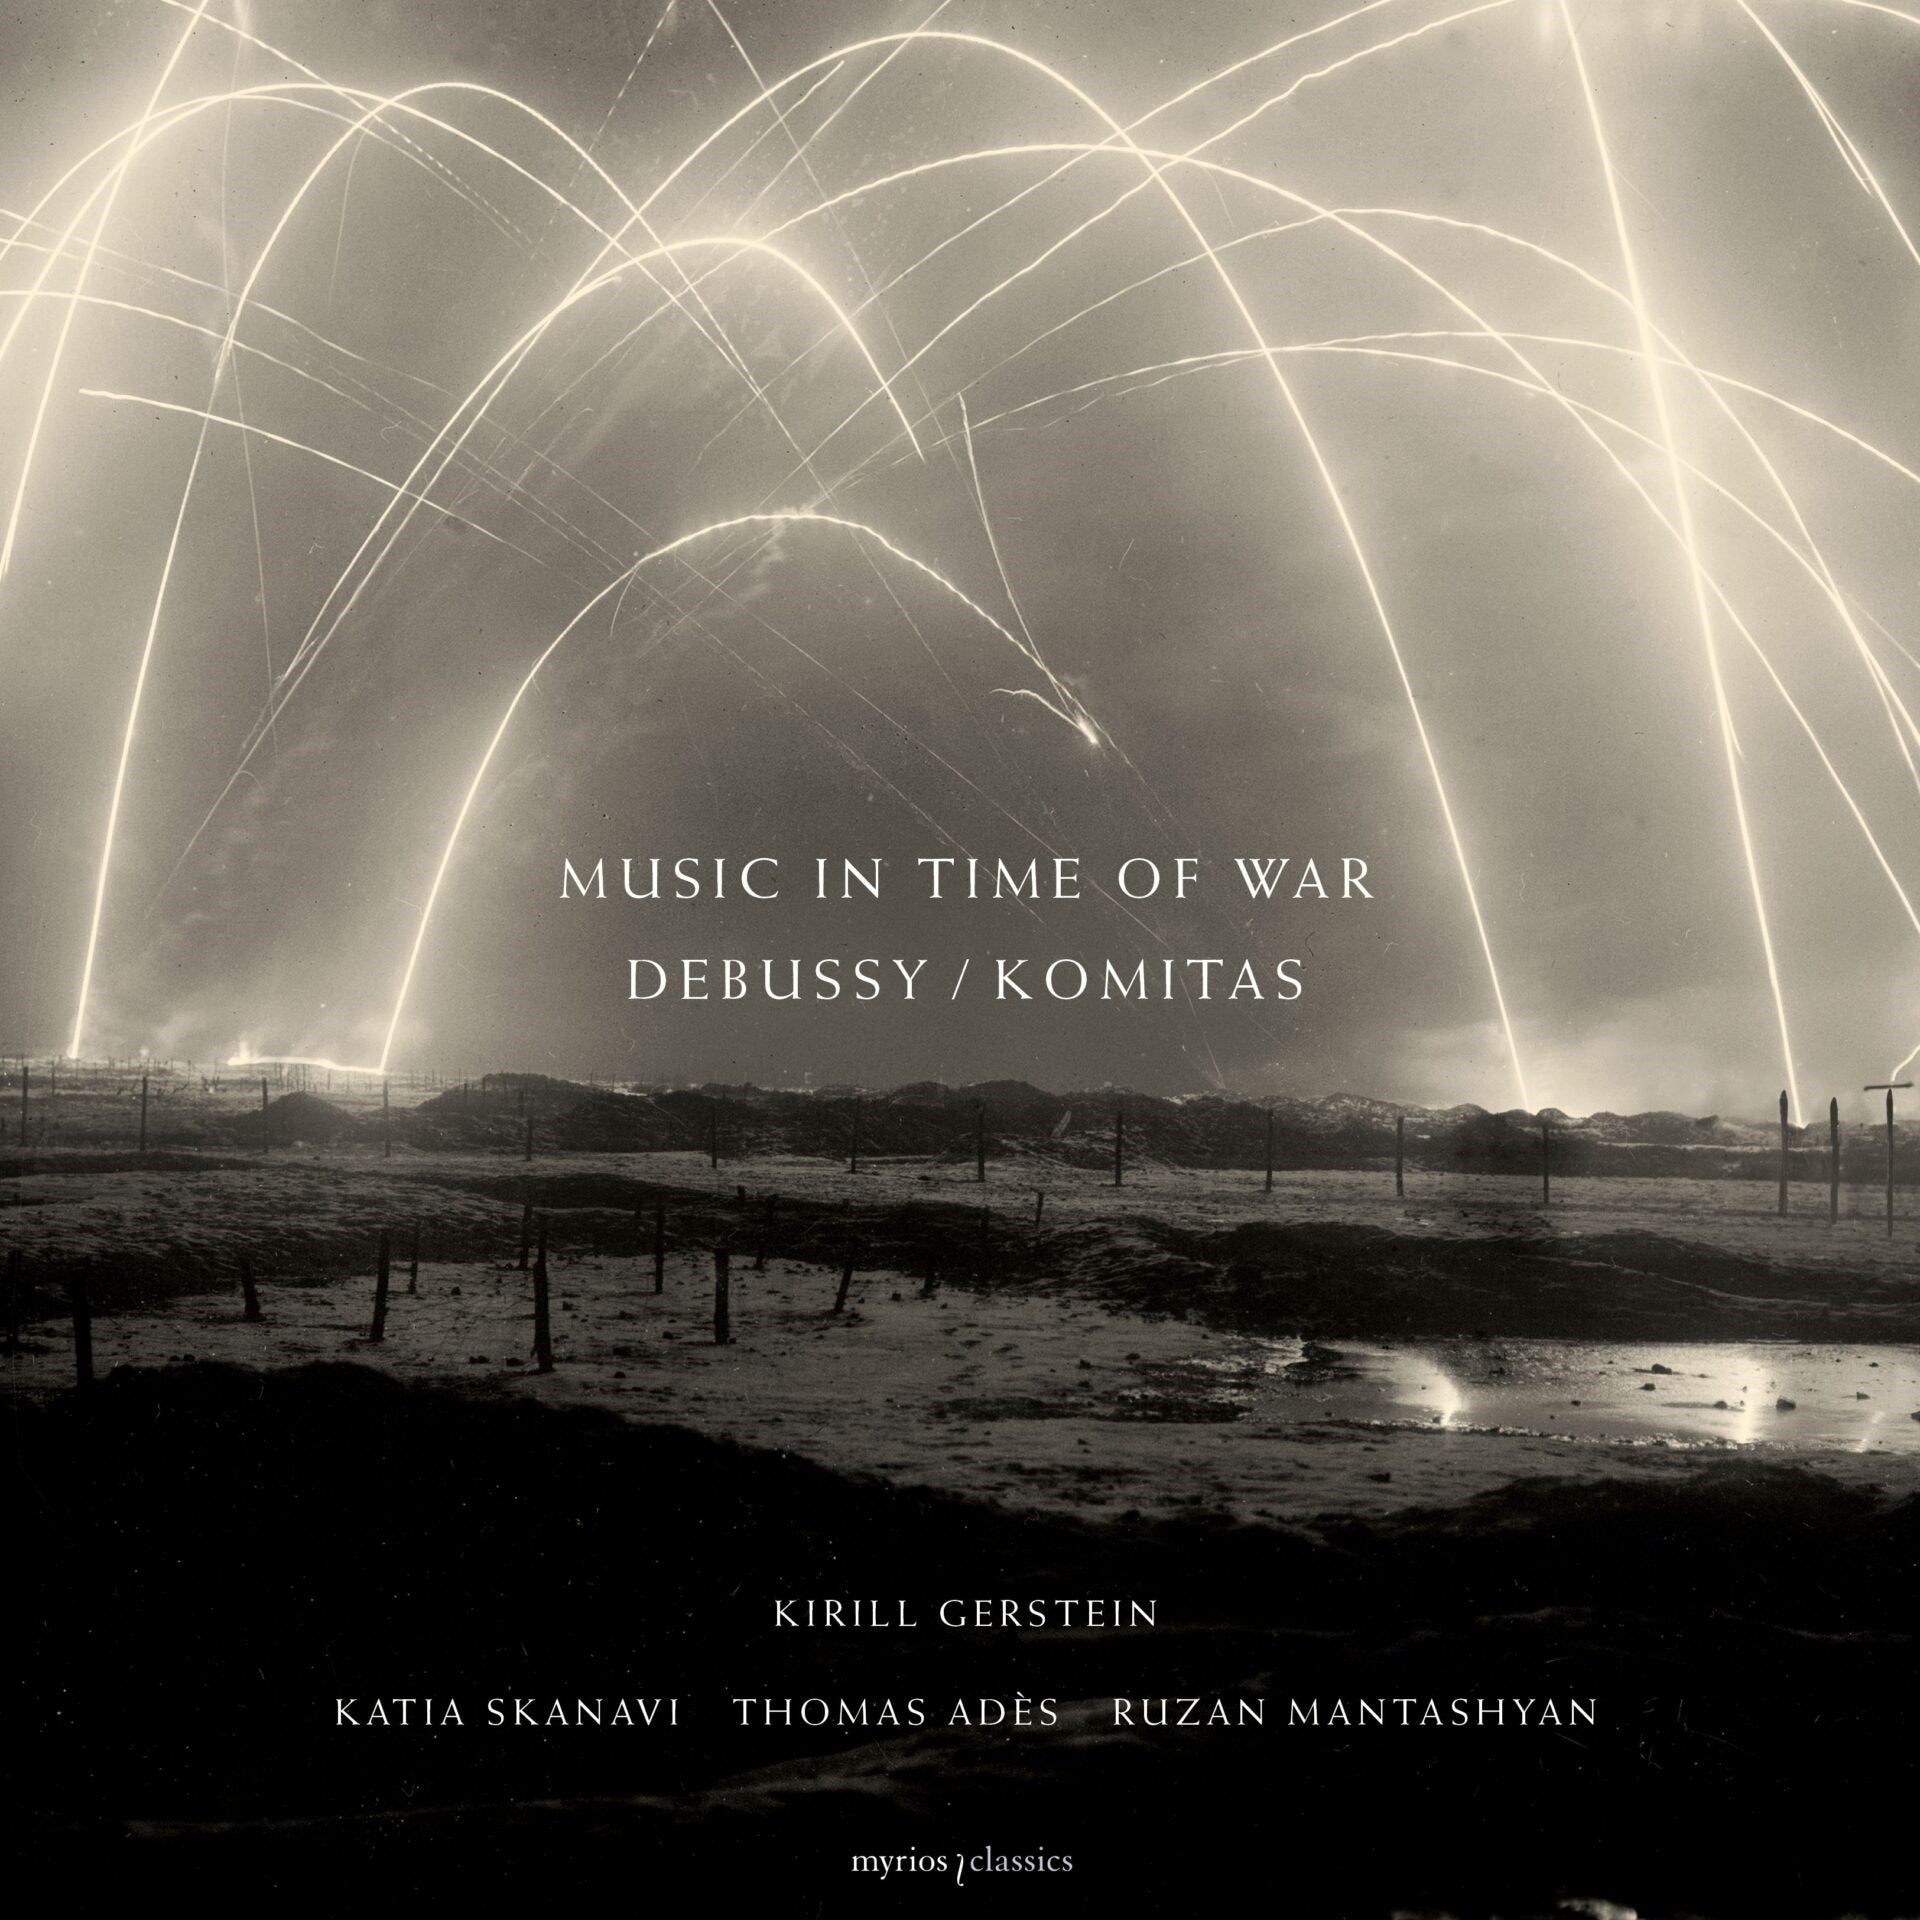 Music in Time of War - Debussy/Komitas [2 CD + Book] / Kirill Gerstein